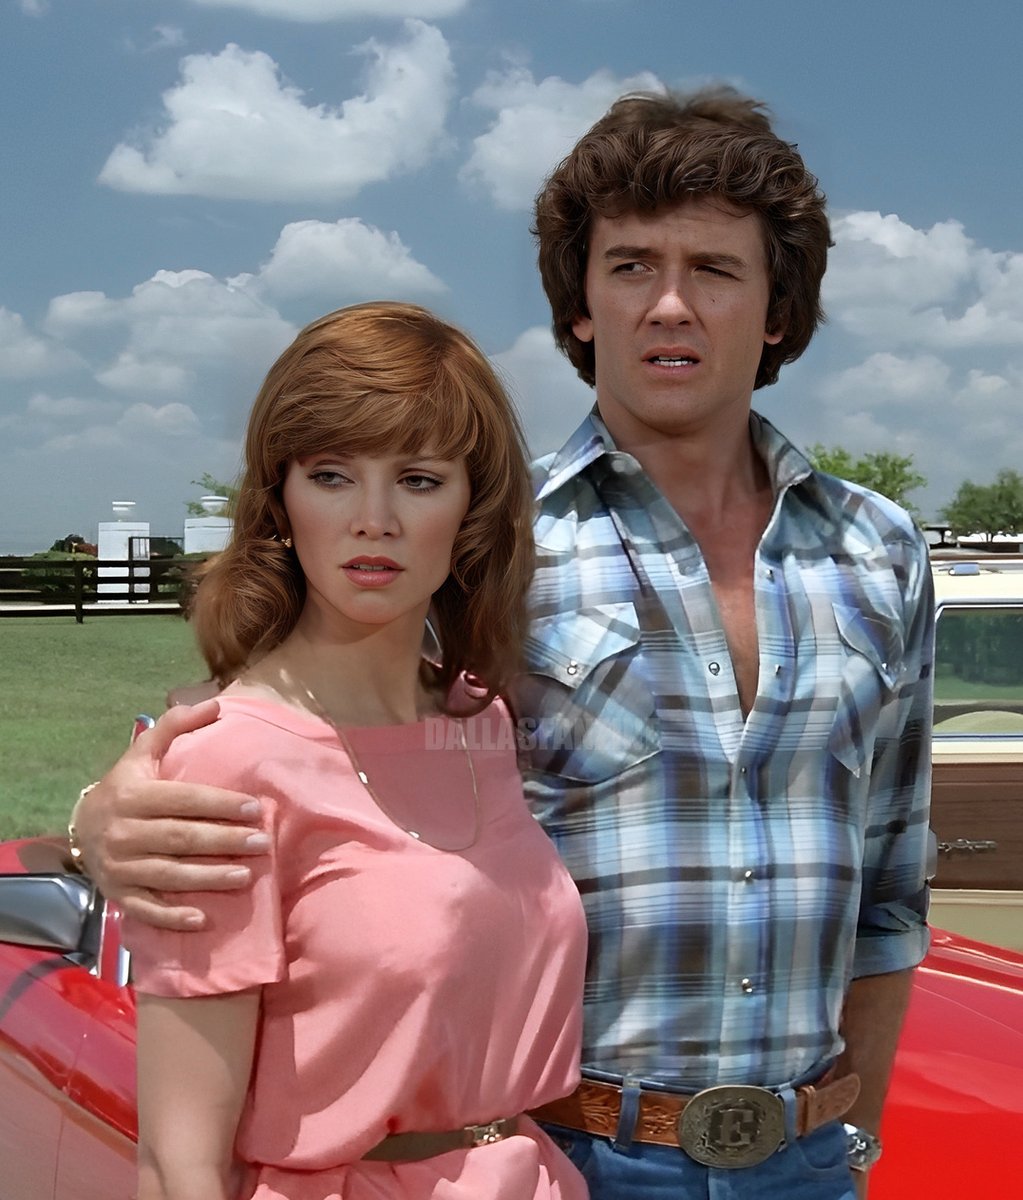 Victoria Principal and Patrick Duffy filming #Dallas at Southfork in 1979. #Dallas45 #retro #tvshow #texas